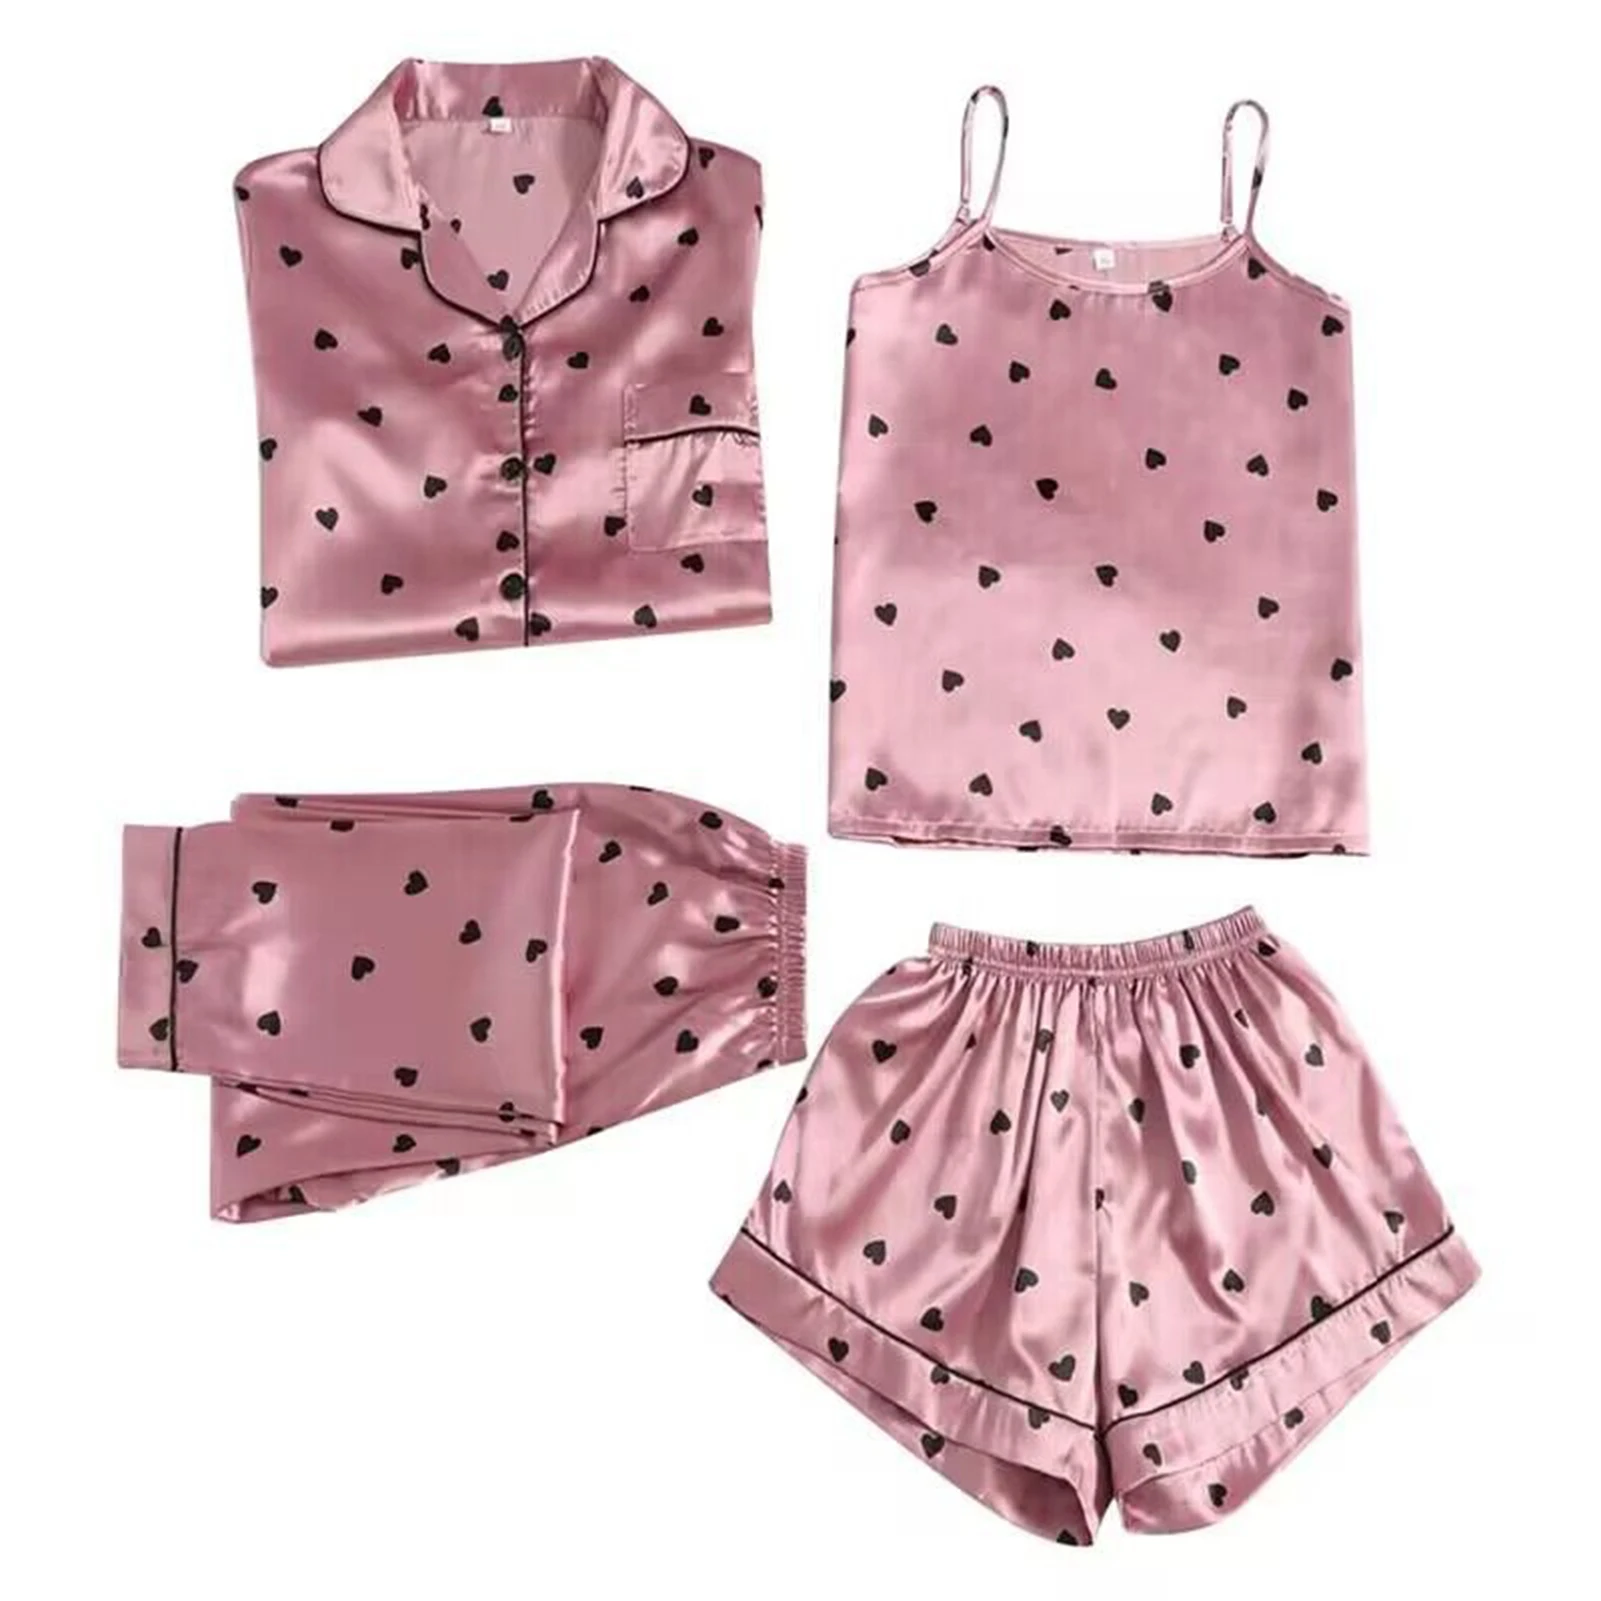 

4pcs Womens Silk Satin Pajamas Set Sleepwear Loungewear Cami Tops Shorts Pants Pj Sets Summer Nightwear for Ladies NIN668